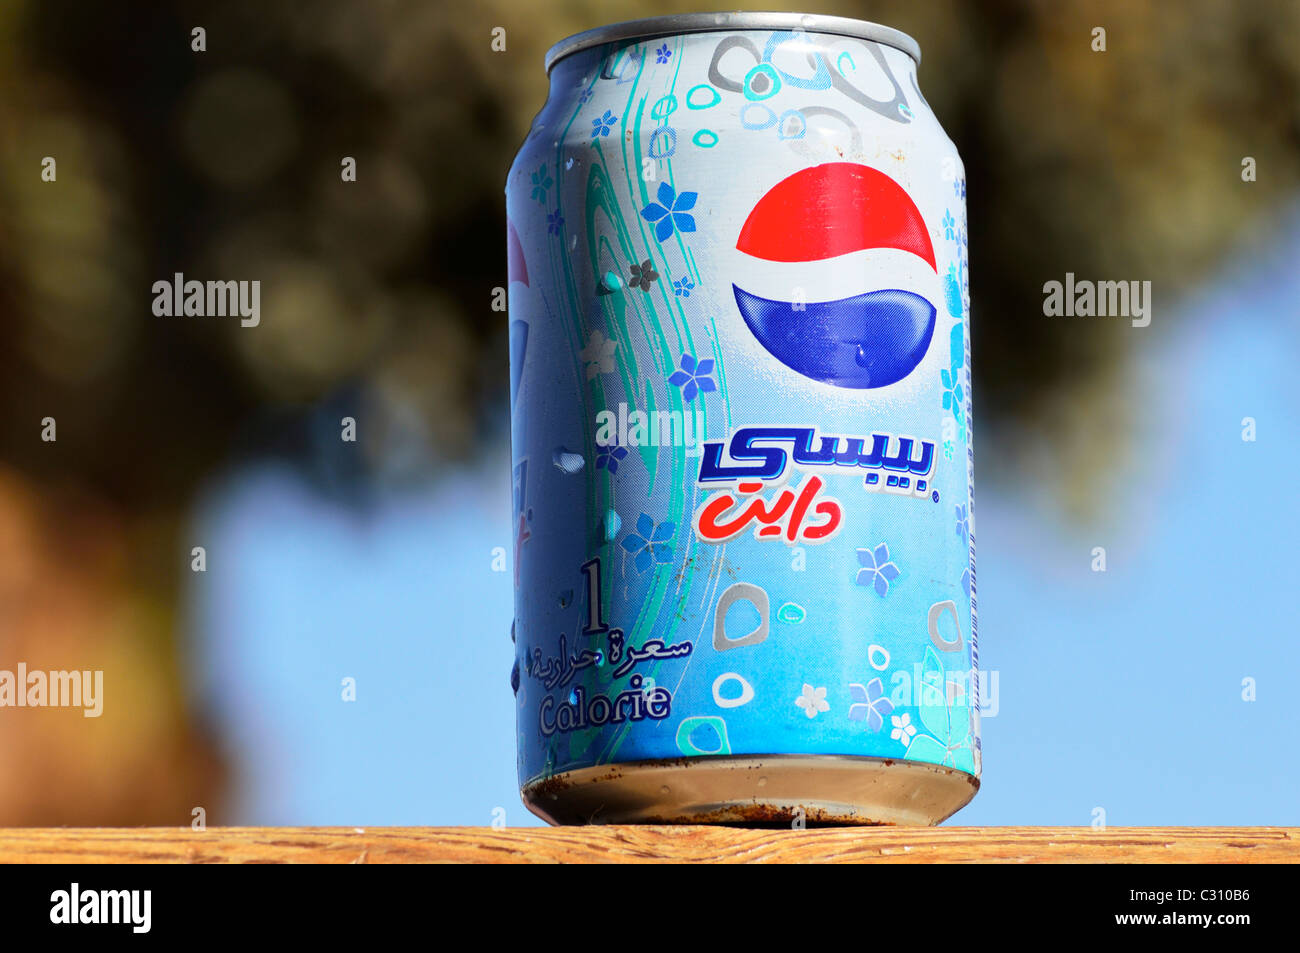 An Arabian Pepsi Cola can, Dahab, Egypt EG Stock Photo